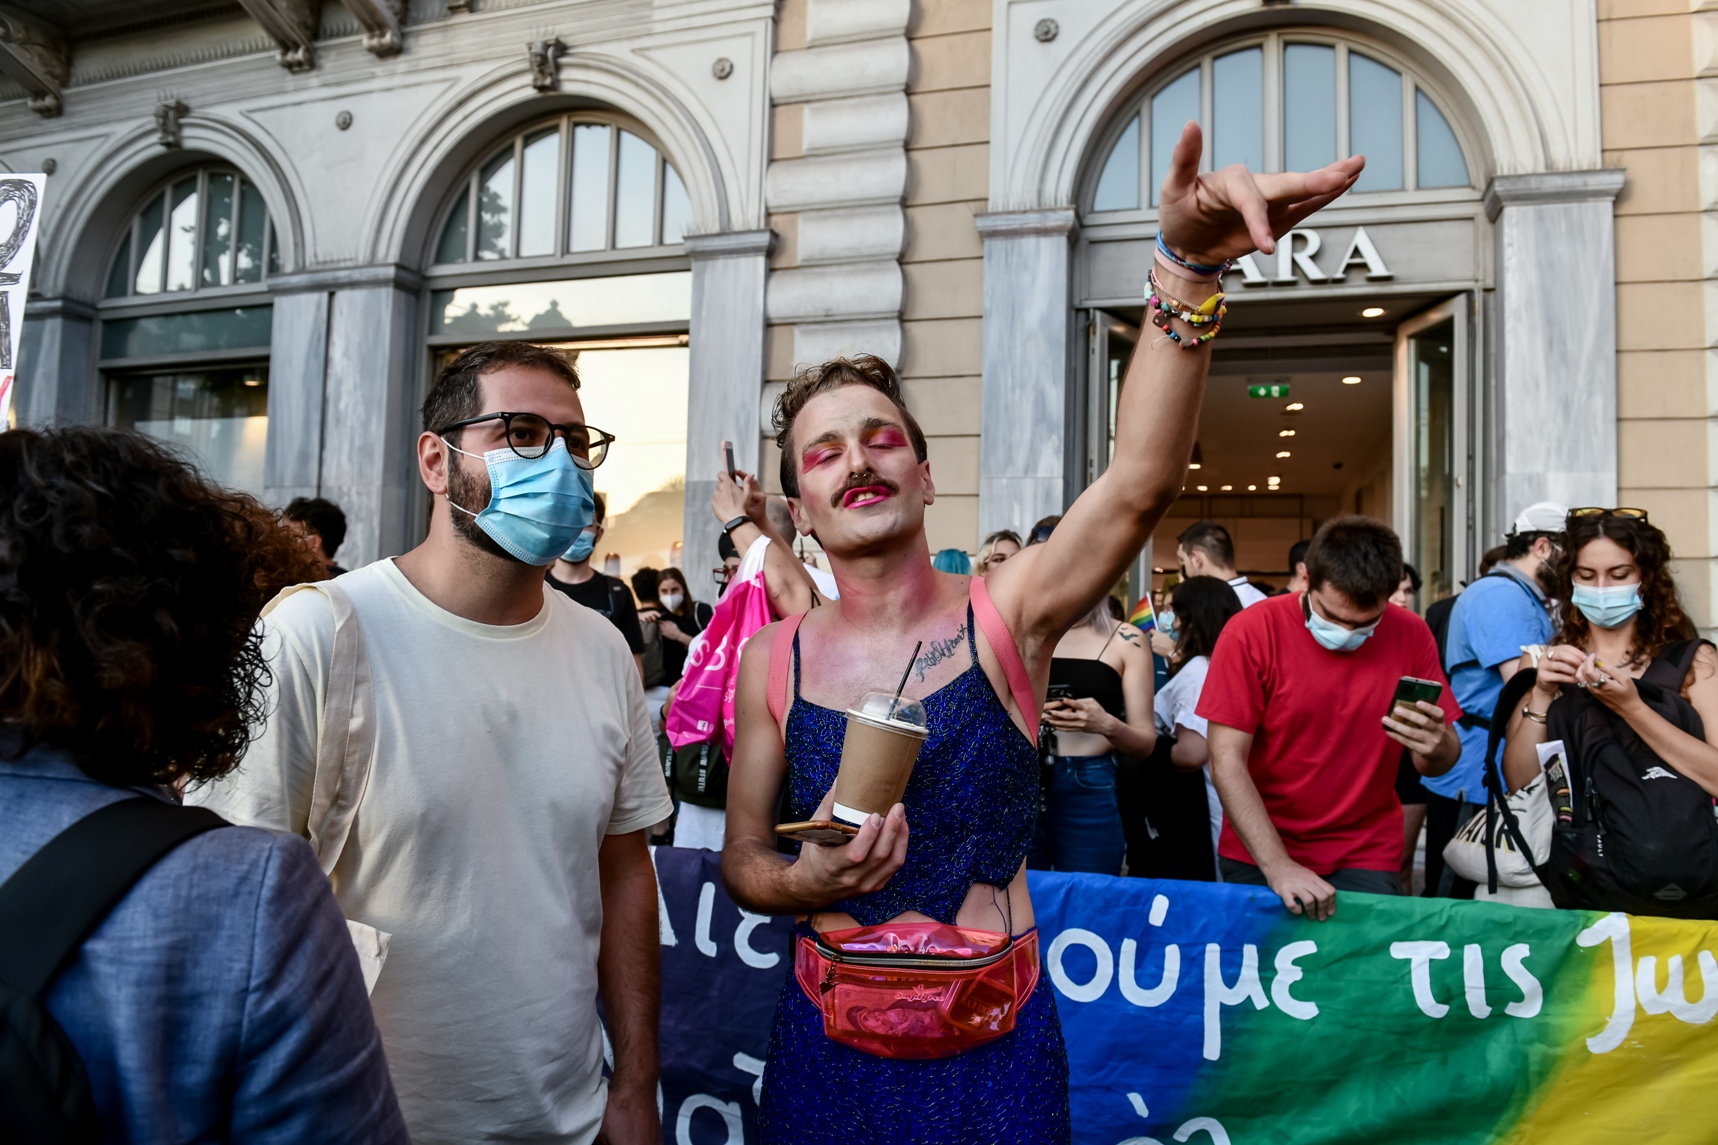 Στιγμιότυπο από την πορεία Athens Pride 2021 - πορεία περηφάνειας της ΛΟΑΤΚΙ ΚΑΙ LGBTQI+ κοινότητας. Γιορτή διεκδίκησης και μνήμης, με συνθήκες πανδημίας φέτος, αλλά με χαρακτήρα διαμαρτυρίας ενάντια σε μια ομοφοβική, τρανσφοβική και ρατσιστική κοινωνία, ενάντια την αστυνομική βία, την πατριαρχία, την ανισότητα, την απομόνωση και την κακοποίηση, Σάββατο 11 Σεπτεμβρίου 2021 (ΤΑΤΙΑΝΑ ΜΠΟΛΑΡΗ/ EUROKINISSI)